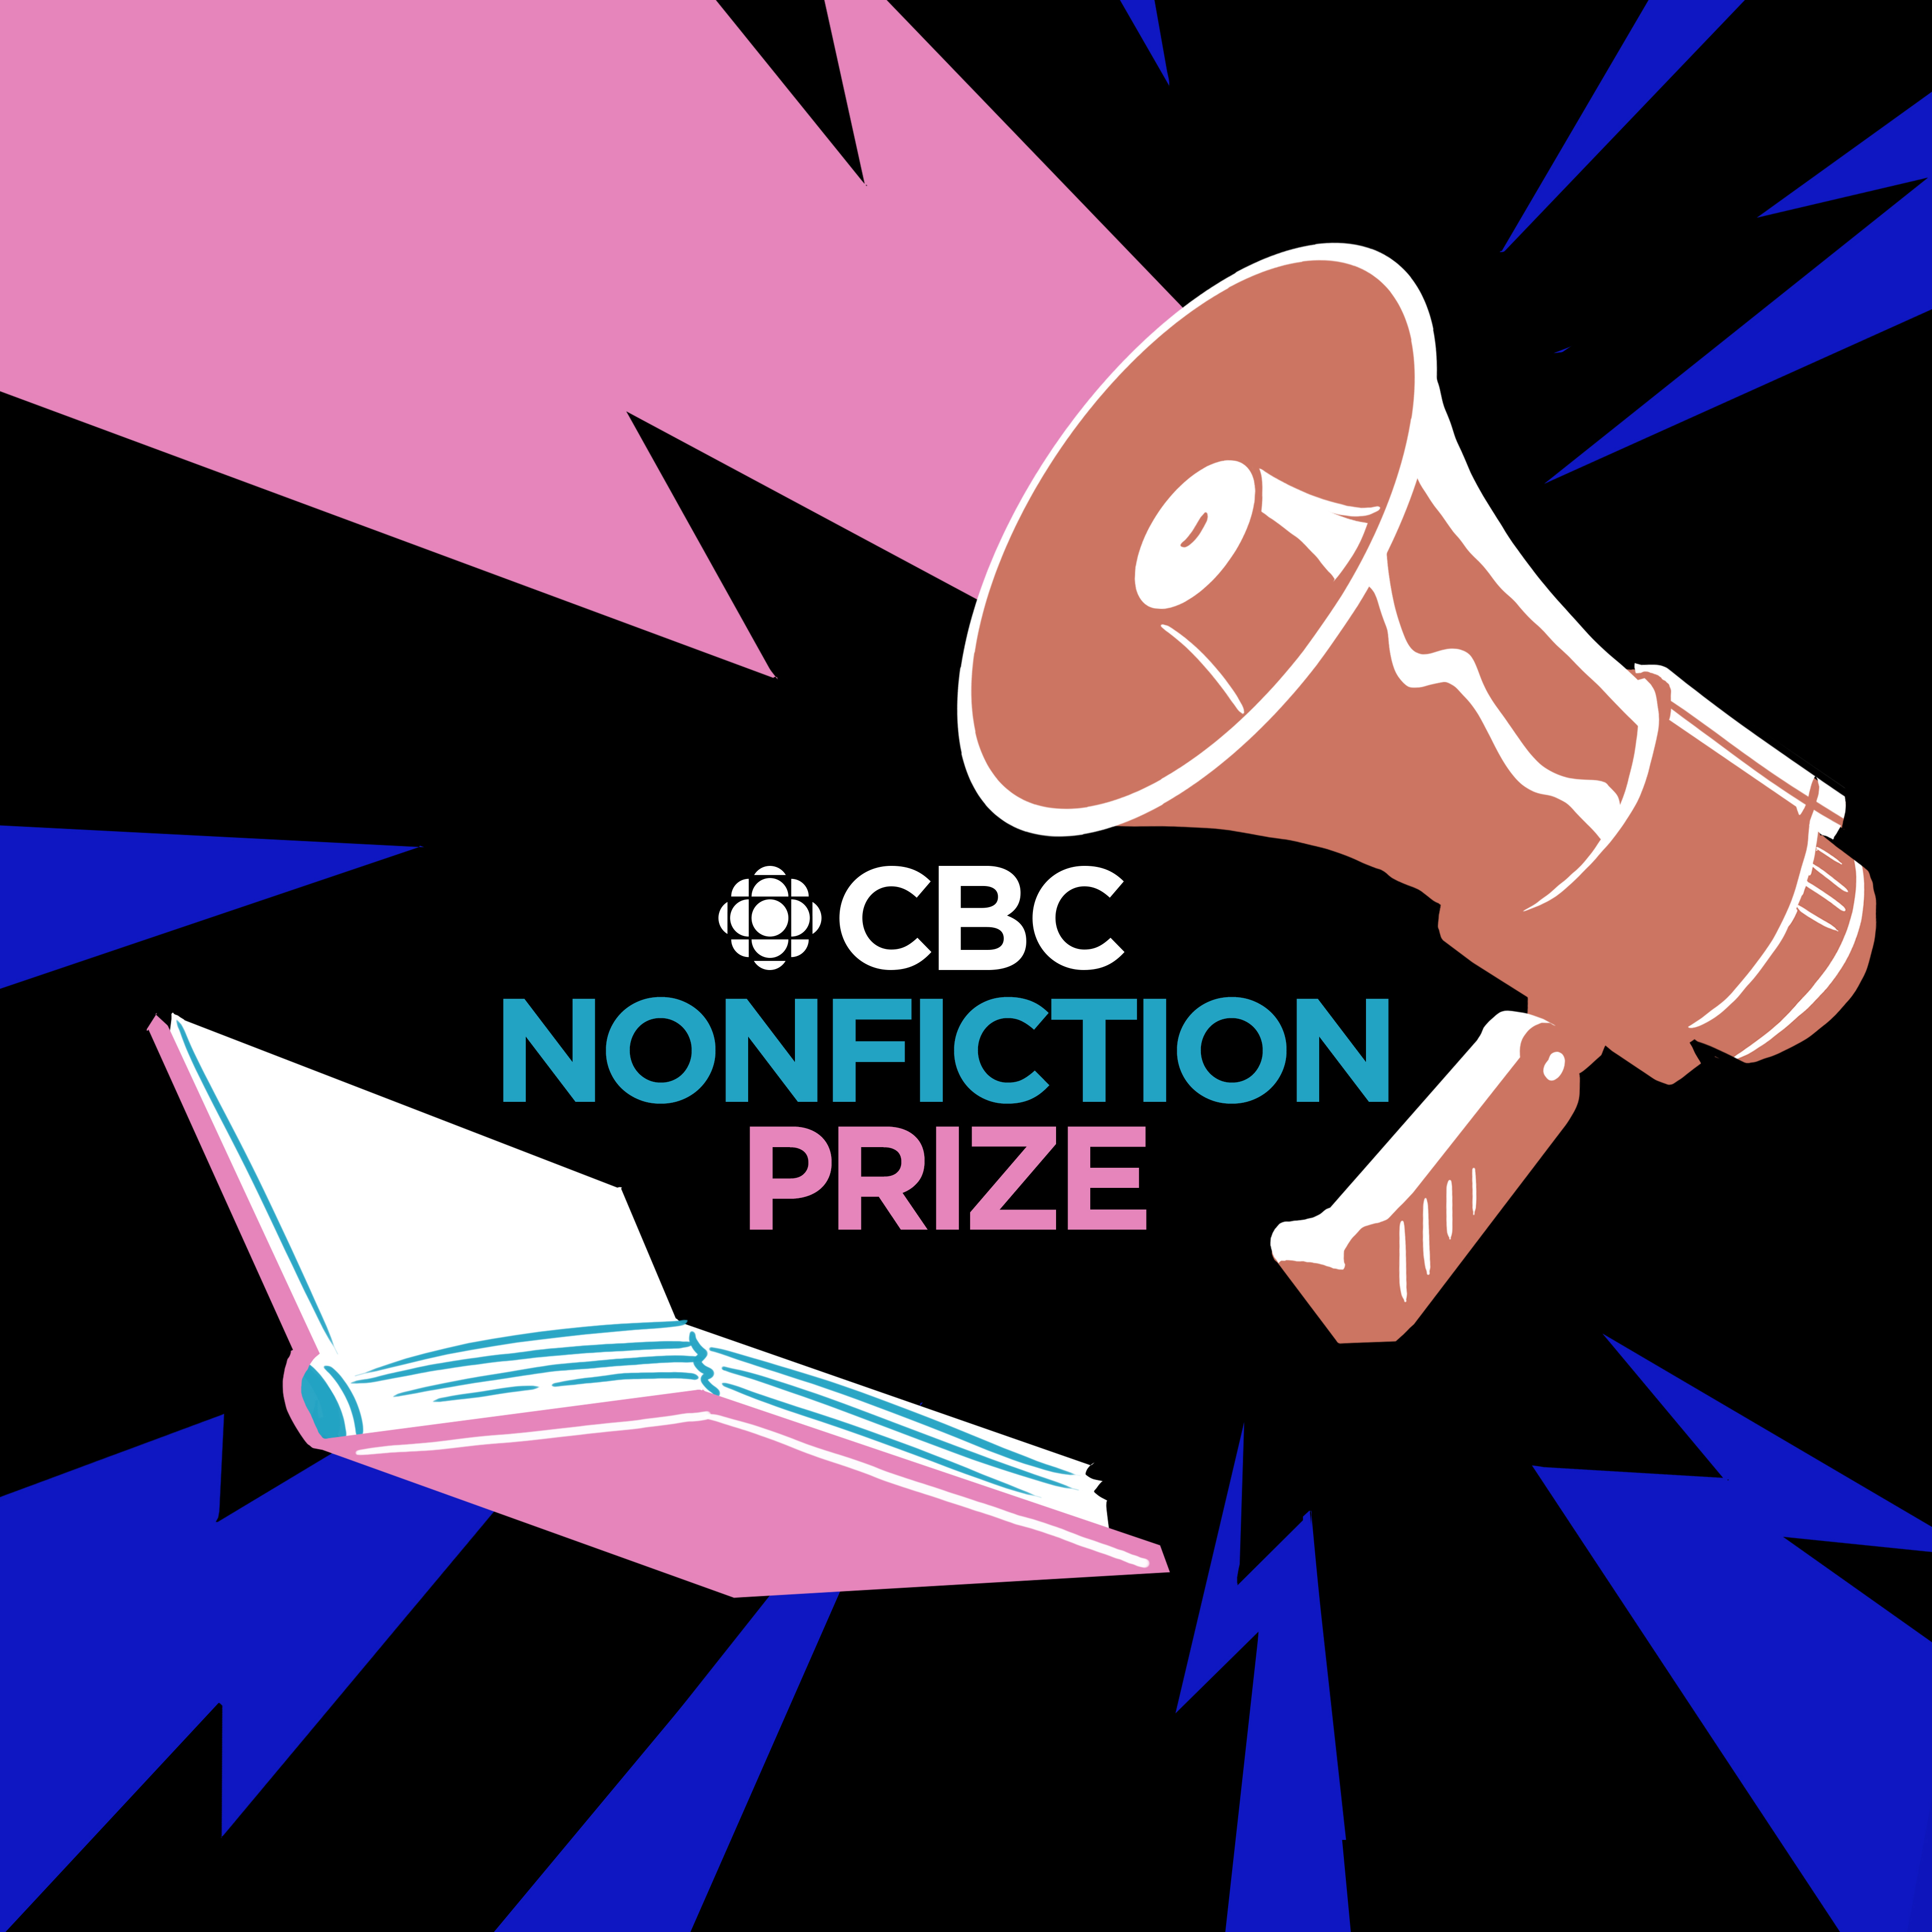 CBC Nonfiction Prize promo image